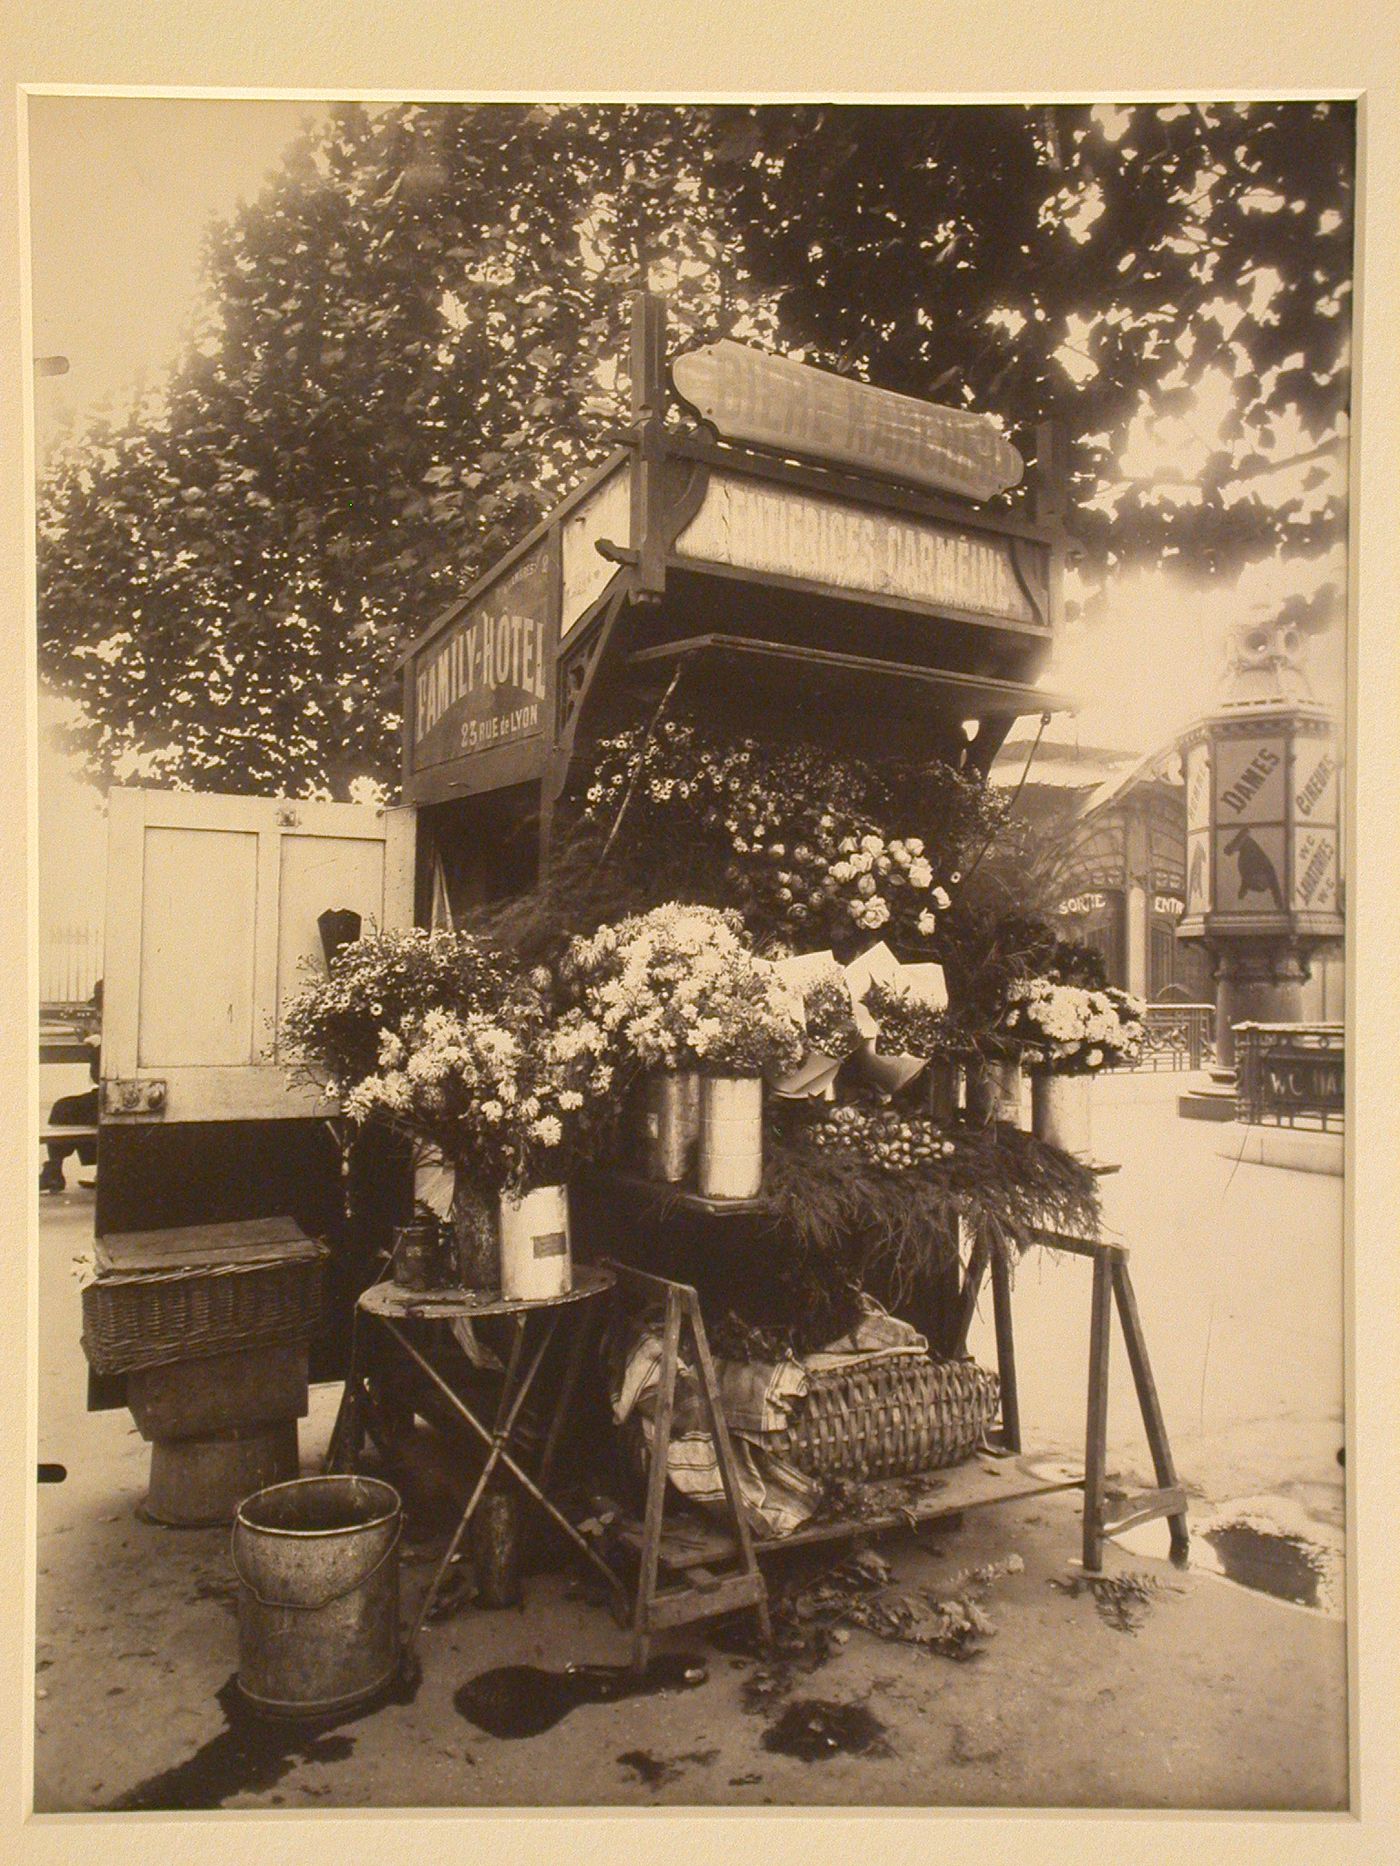 Flower seller's stall, place de la Bastille, Paris,France